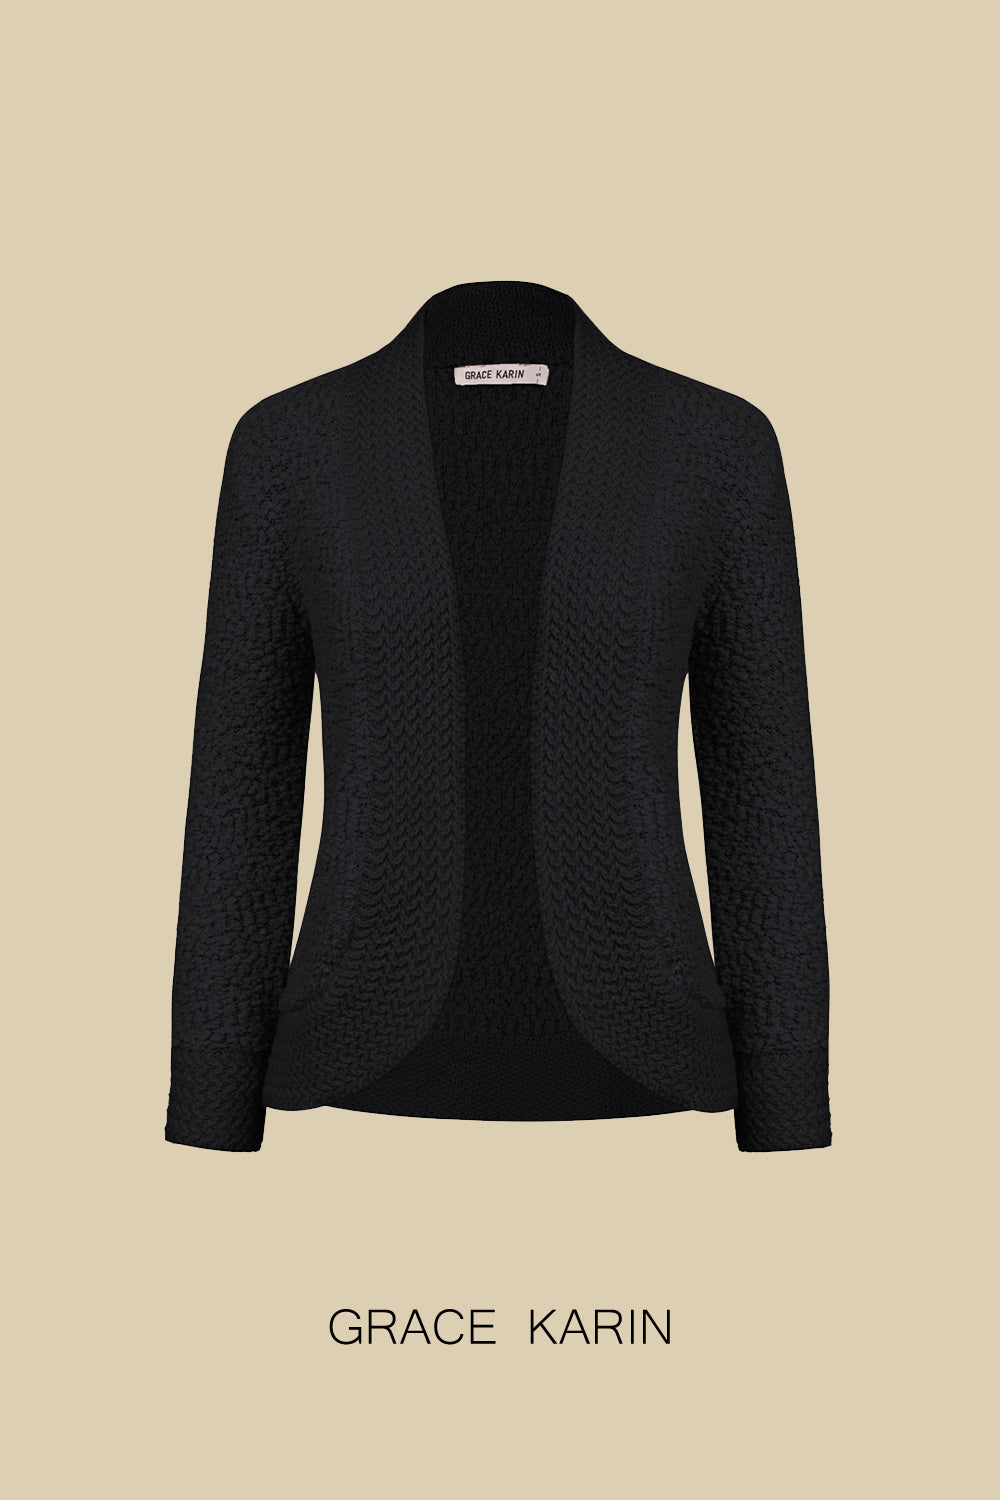 GK Cárdigan de tela en contraste para mujer, suéter con dobladillo irregular y frente abierto de manga larga